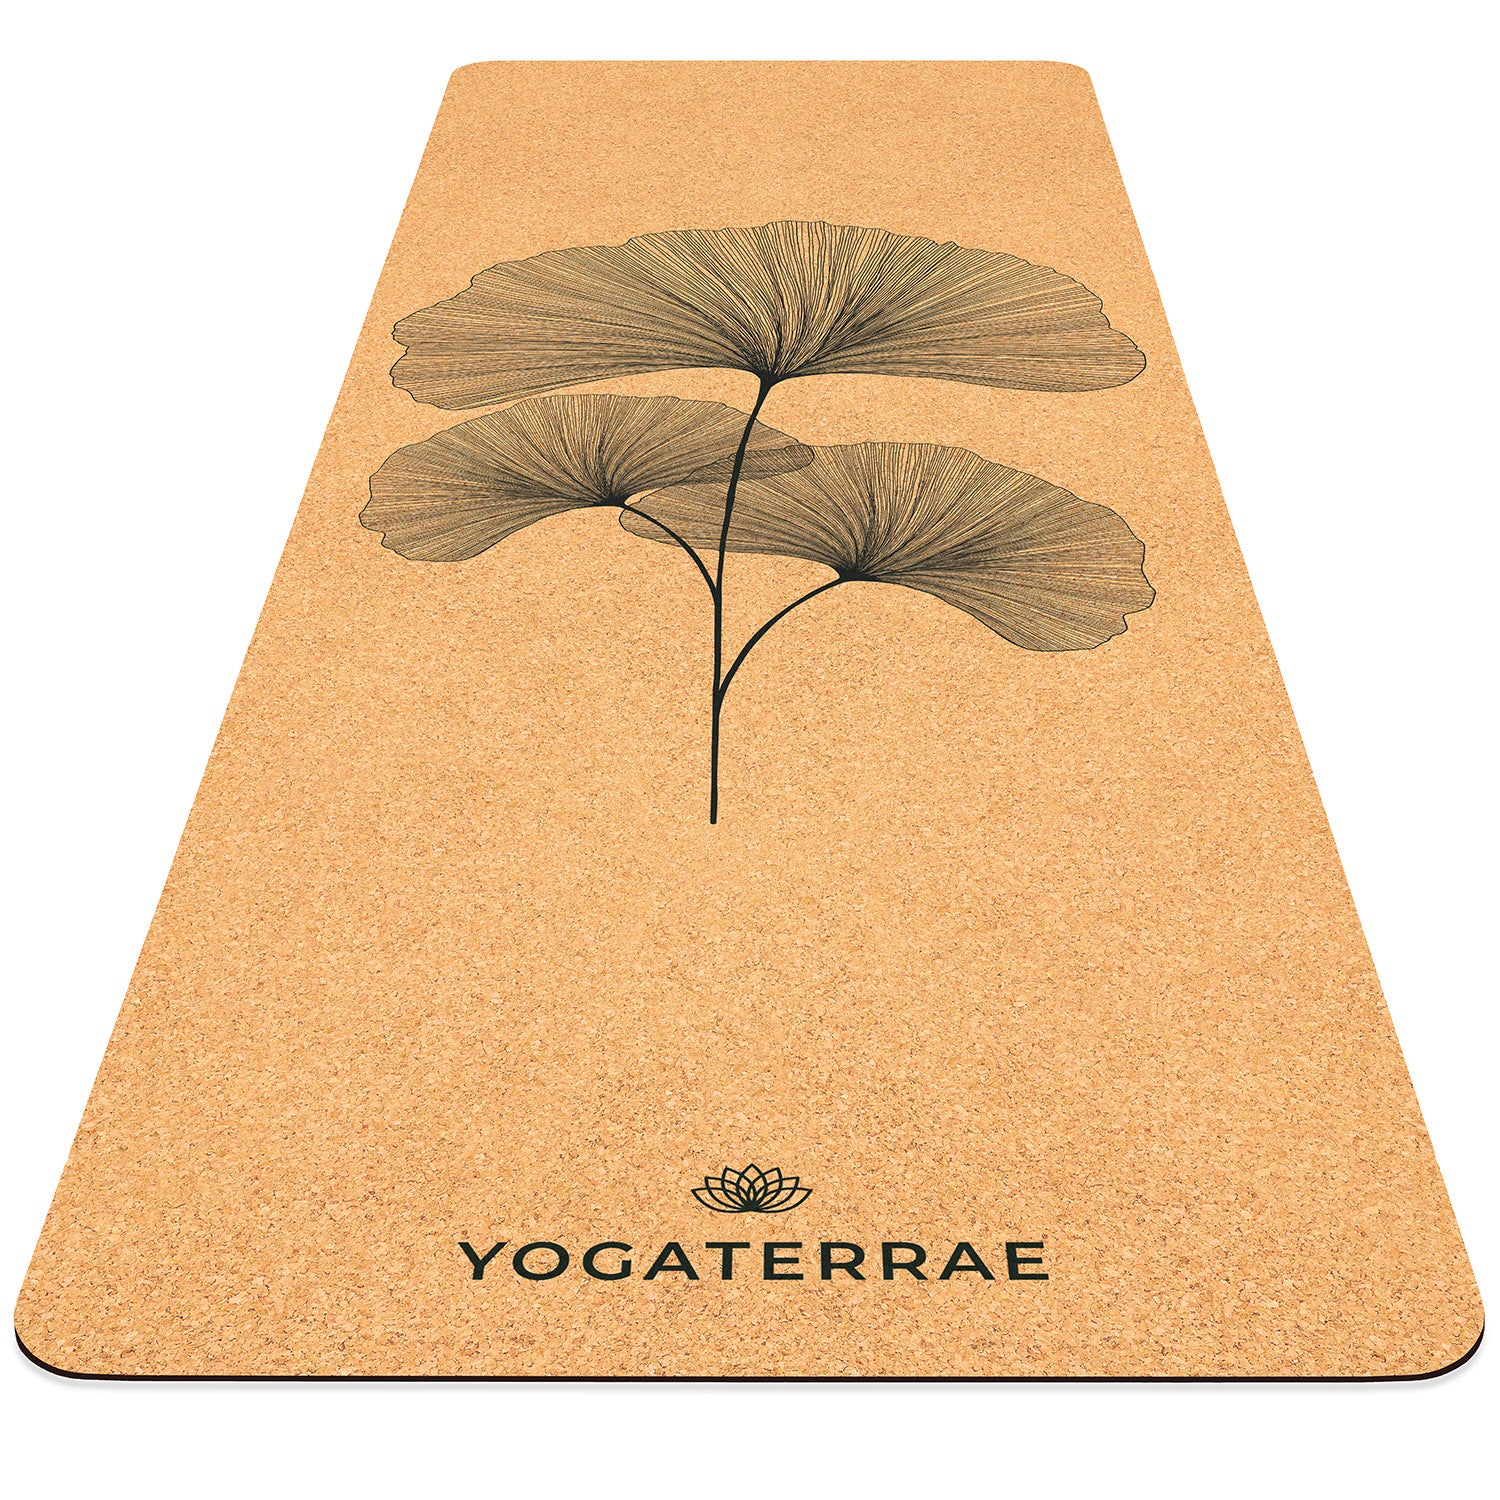 Tapis de yoga liège et caoutchouc naturels antidérapant écologique Ginkgos Bouquet YOGATERRAE marque française